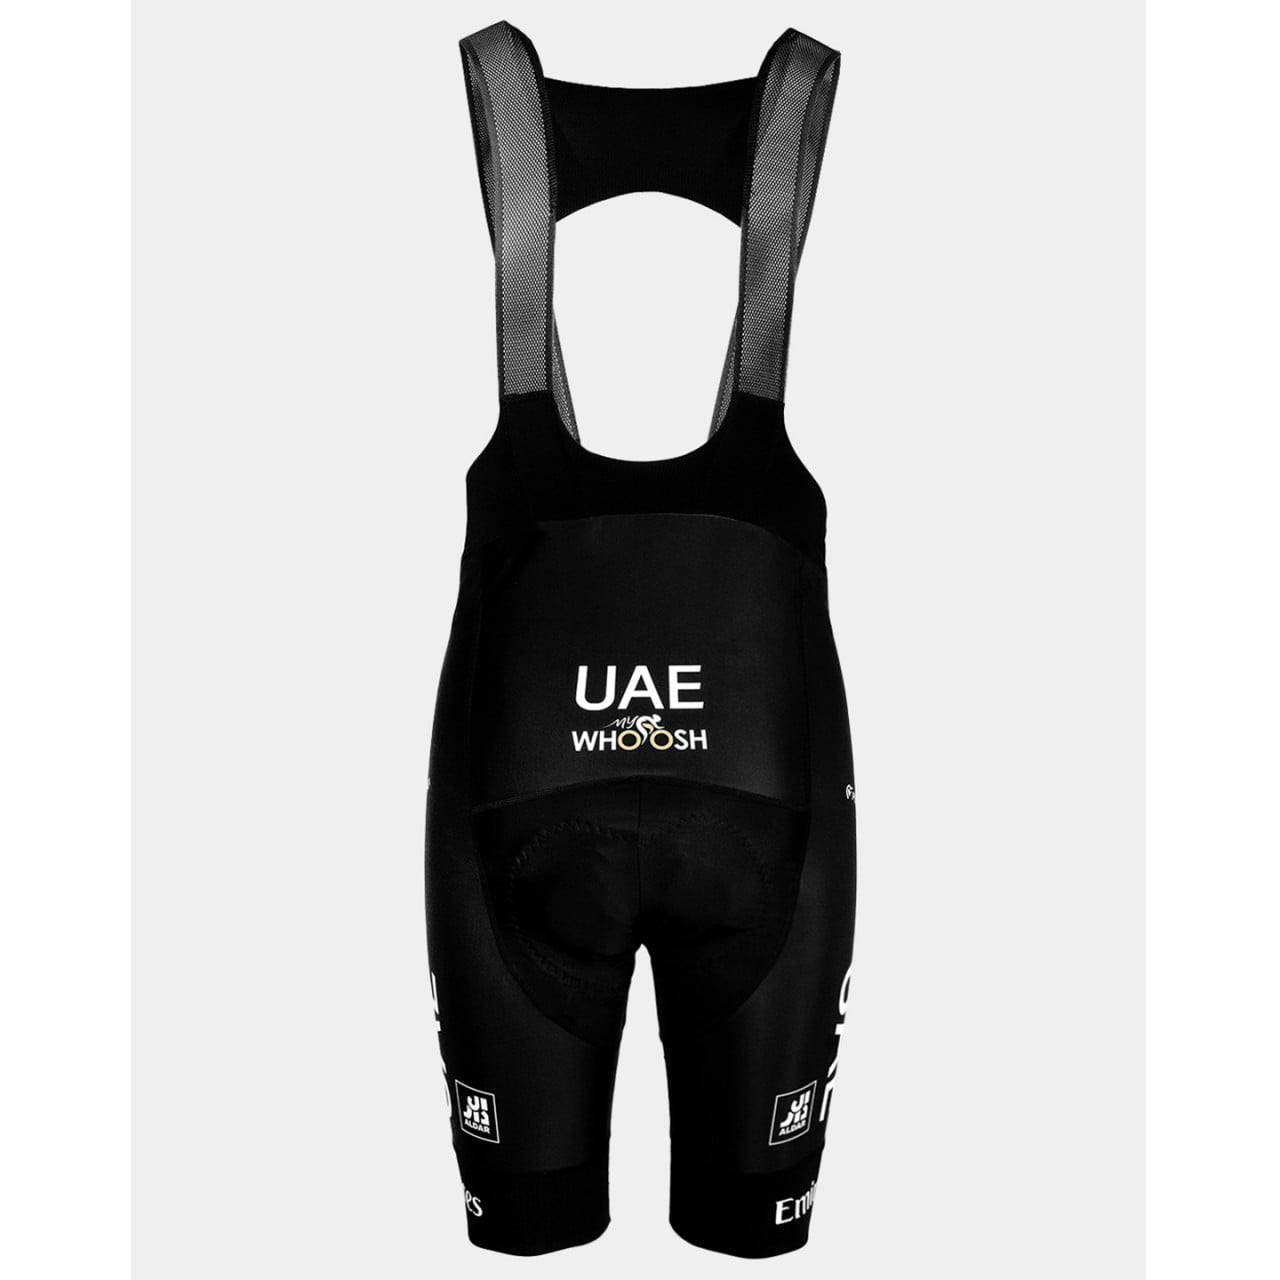 UAE EMIRATES 2024 Set (2 pieces)